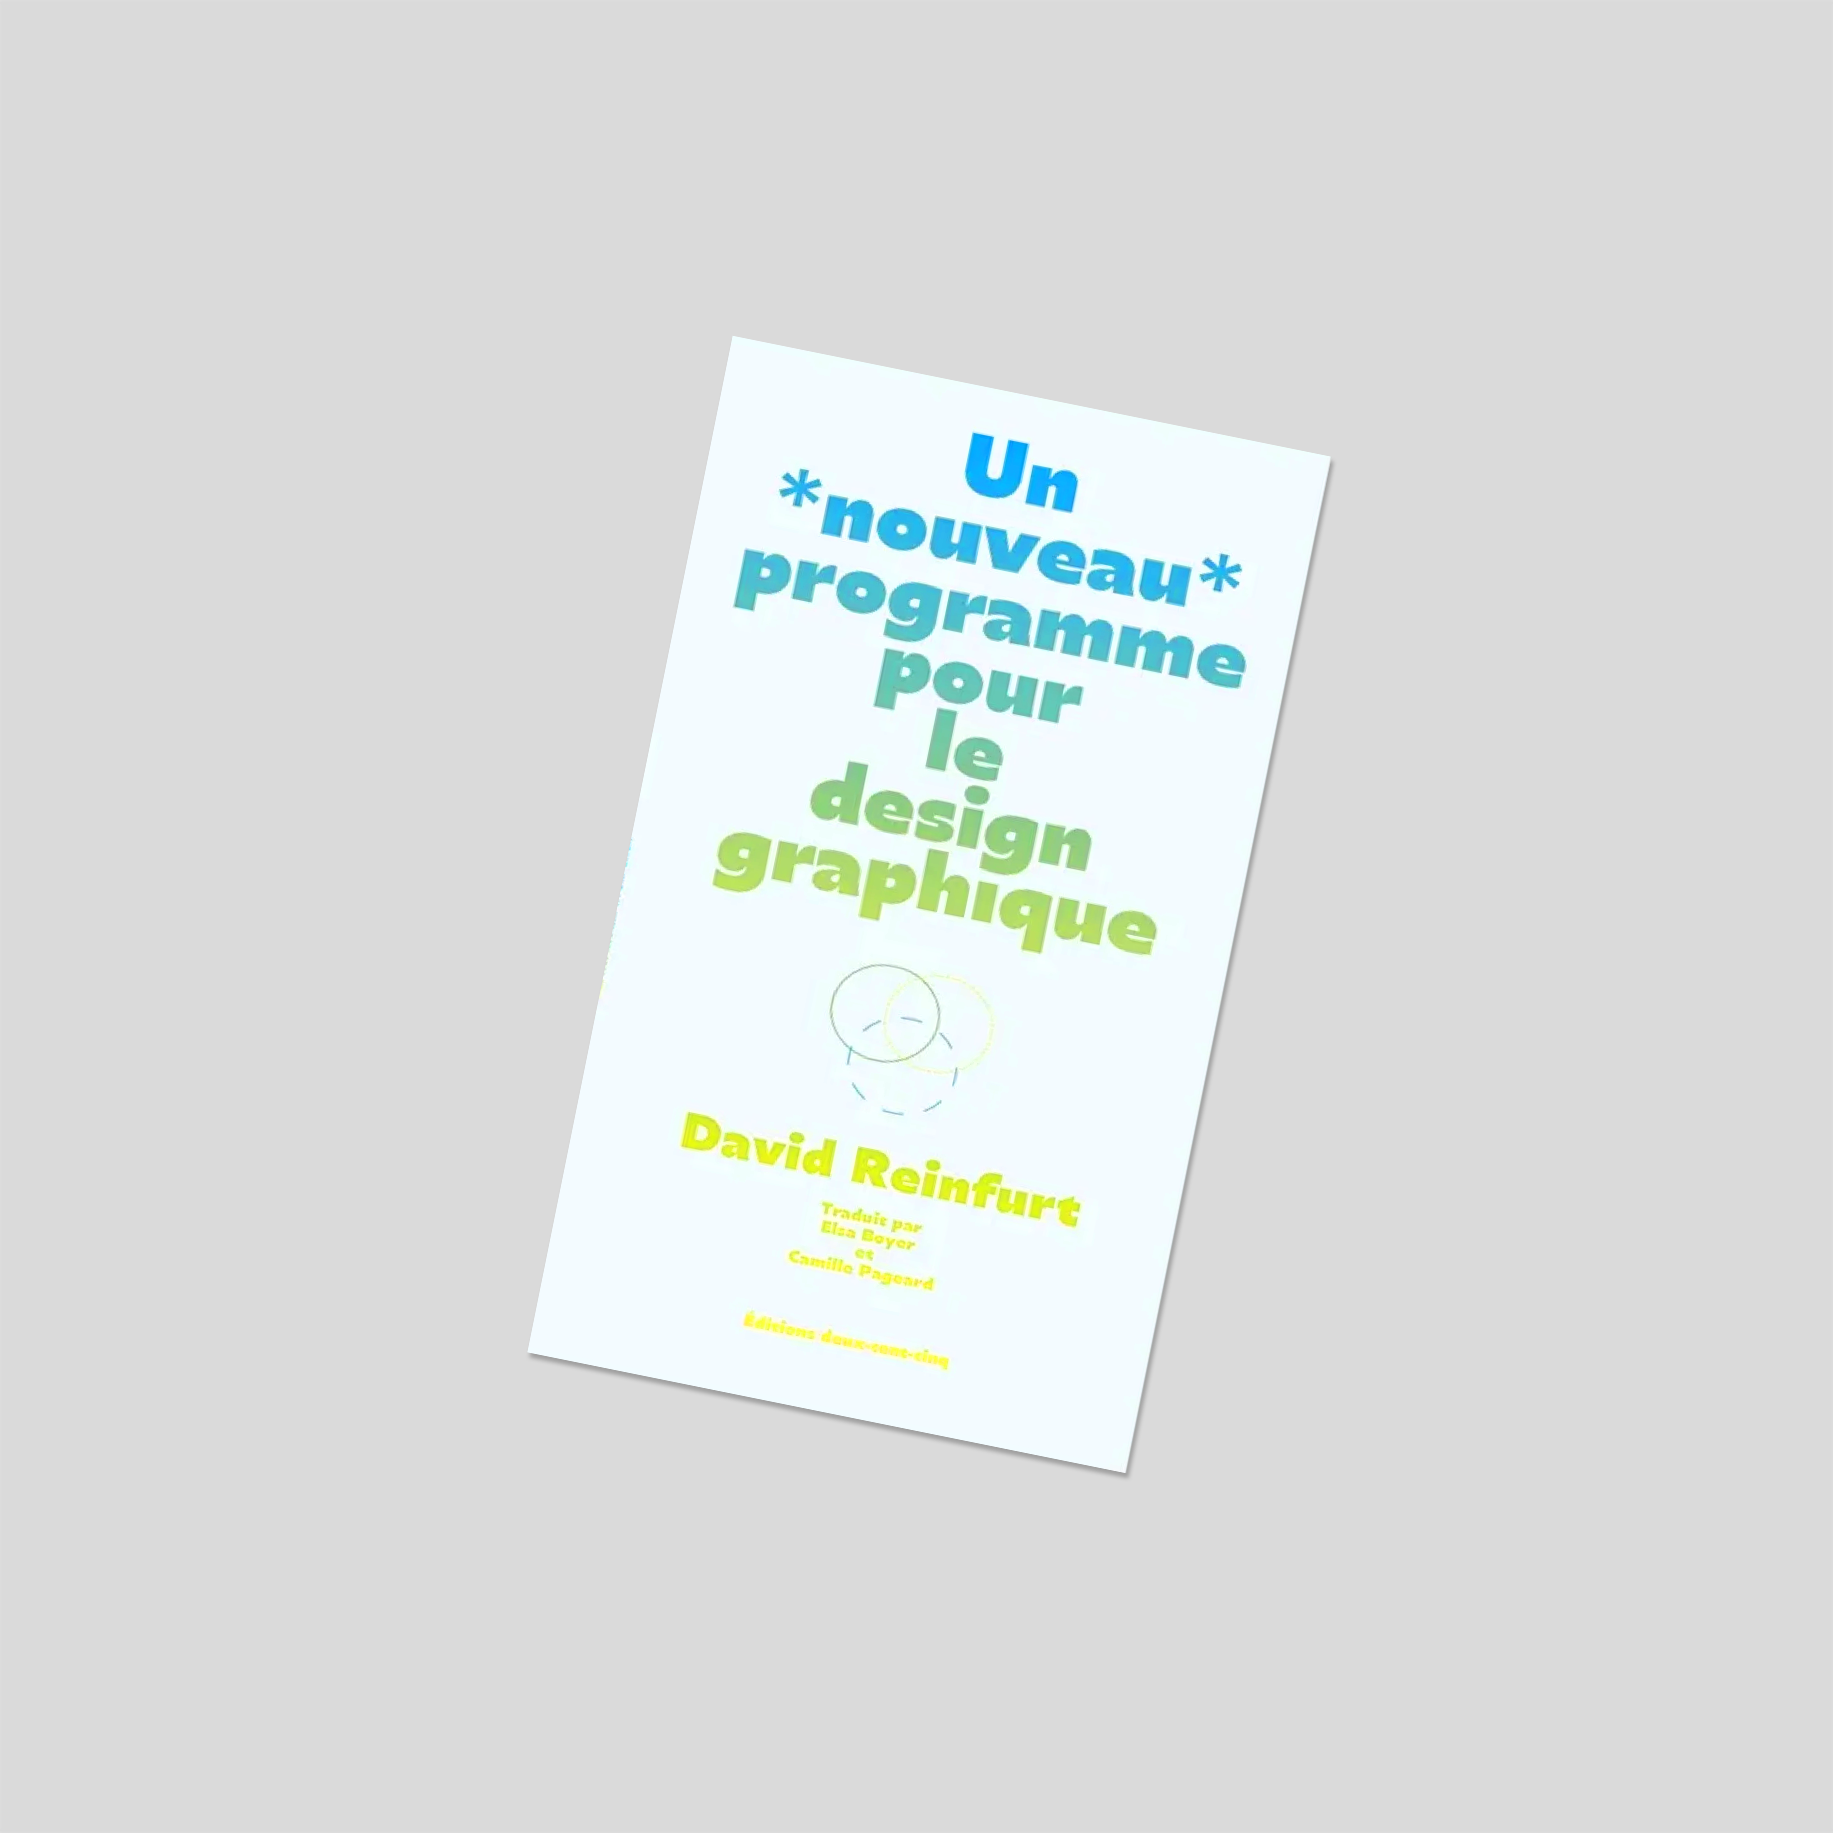 Un nouveau programme pour le design graphique — David Reinfurt